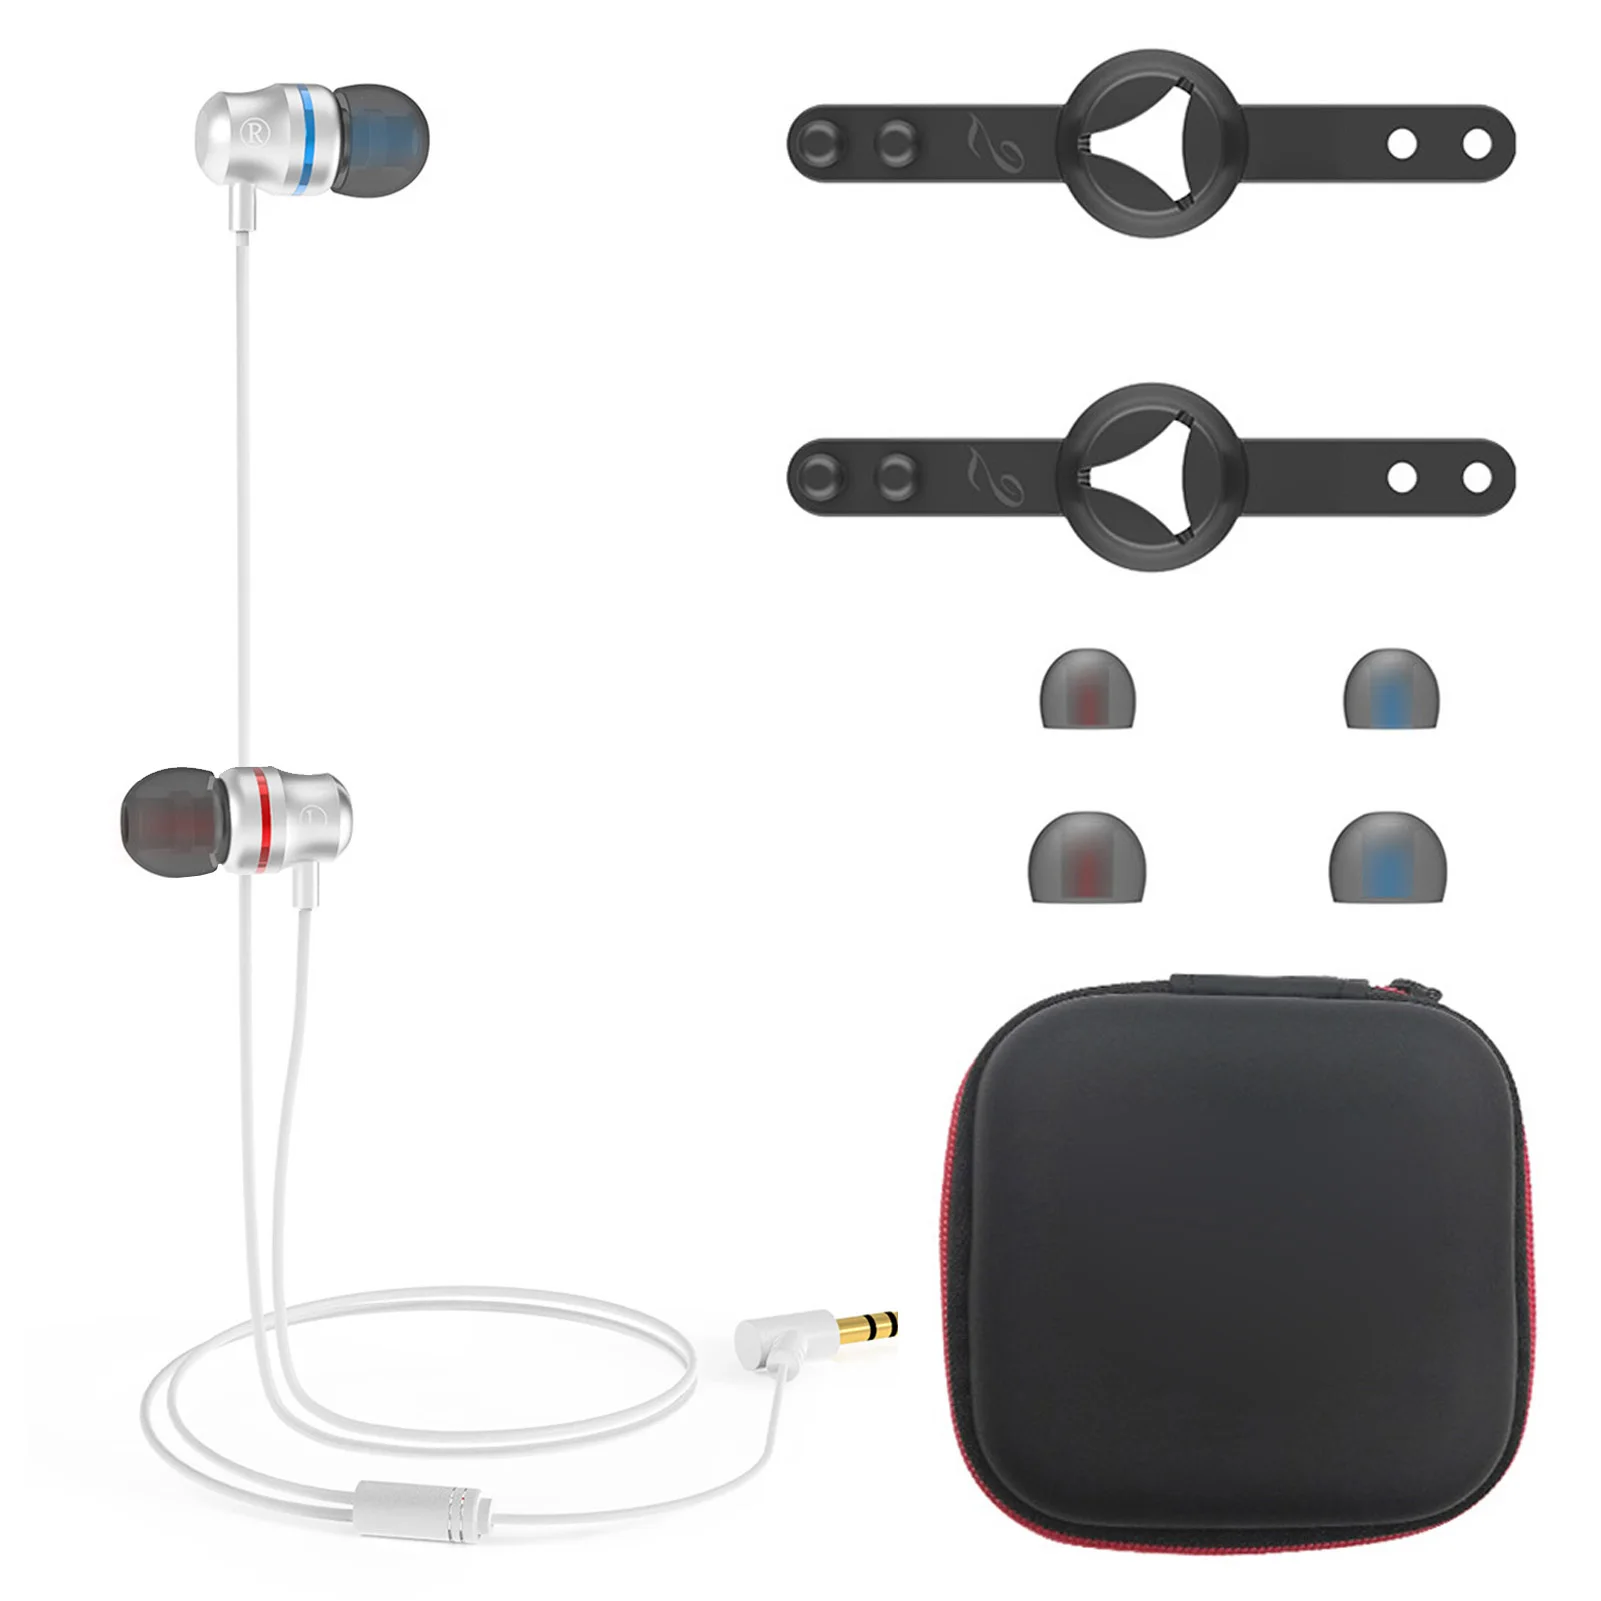 Mejor vendedor  VR Quest 2-auriculares intrauditivos con cable, reducción de ruido, para juegos, accesorios para auriculares Oculus Quest 2 gBQLxaGVJON